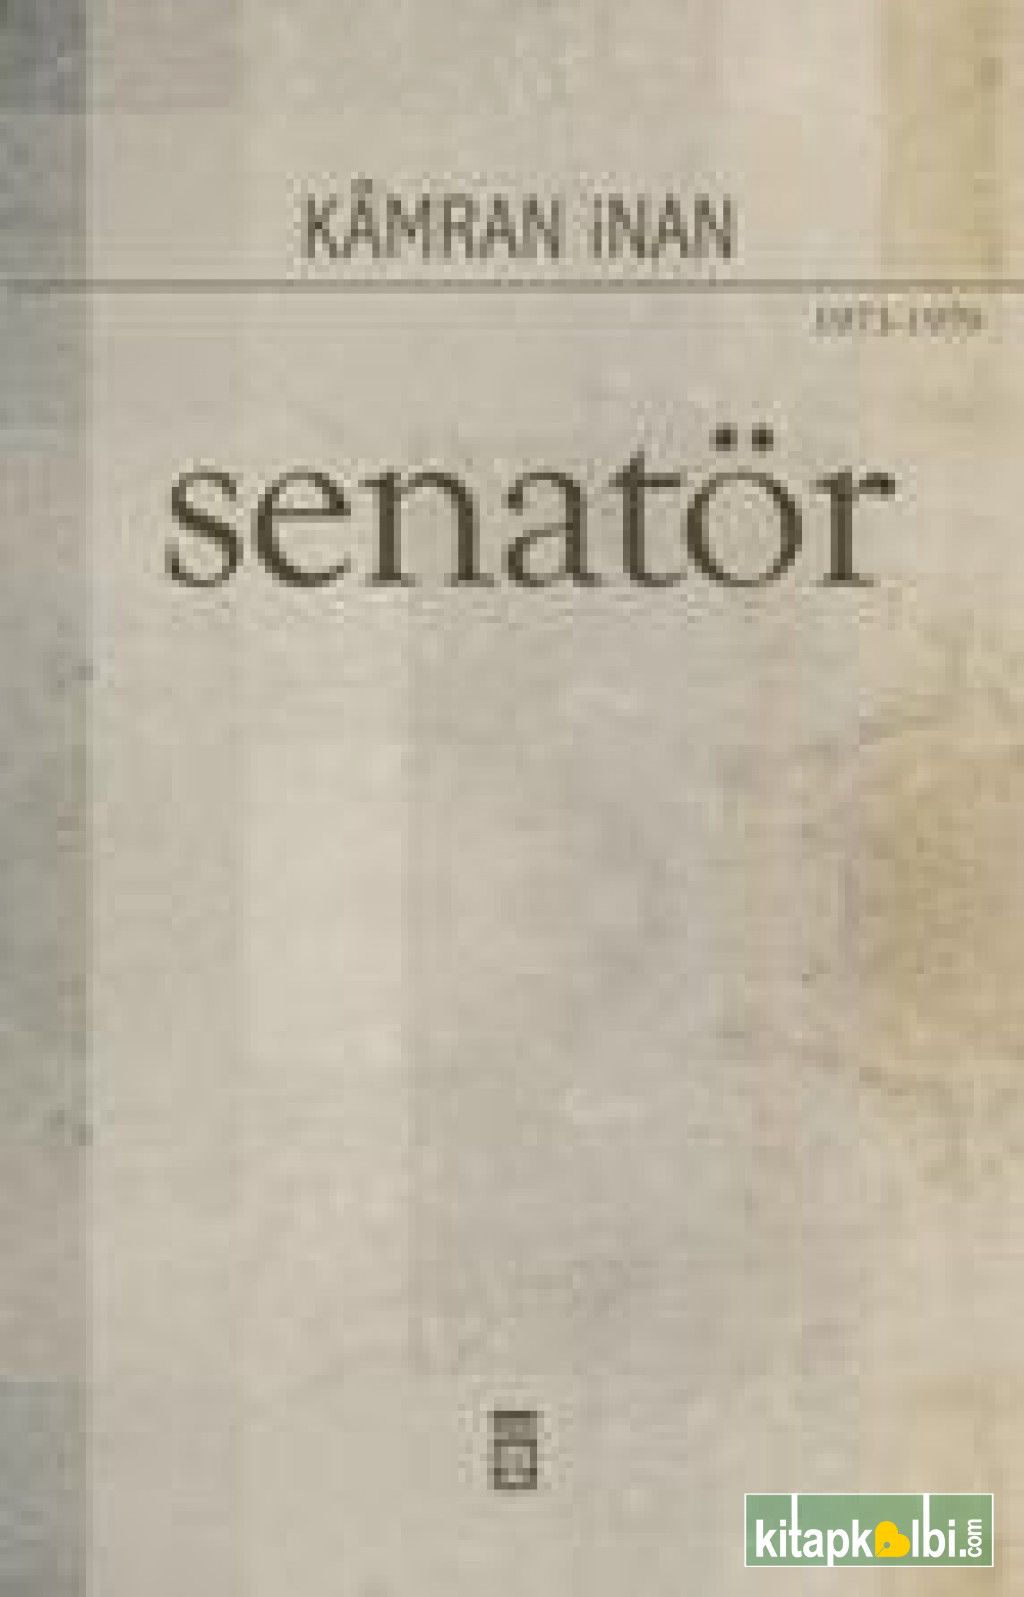 Senatör